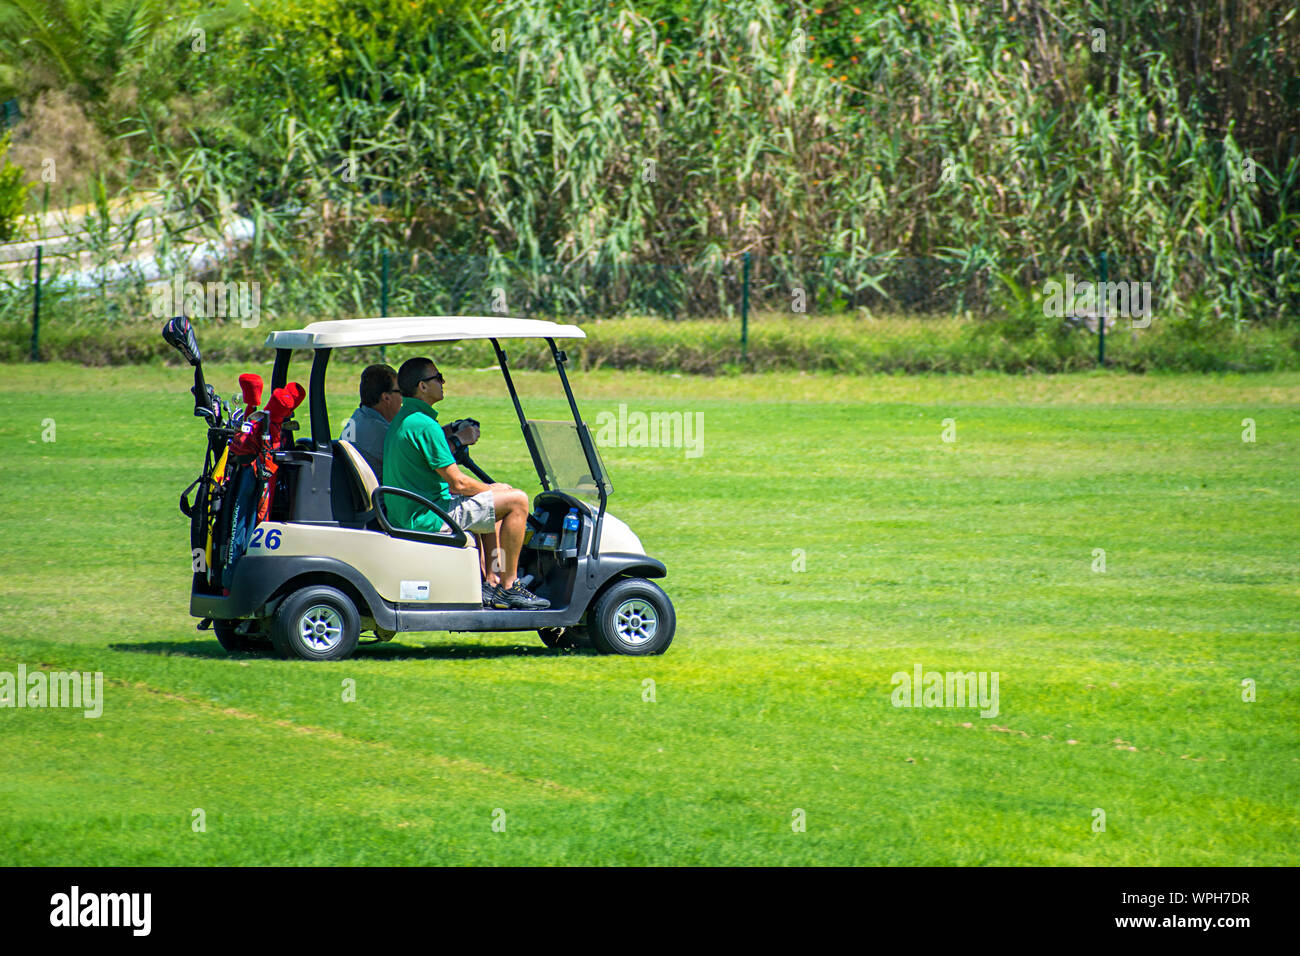 Murcia, Spanien, 25. August 2019: Sportler, ein Golf Cart in einem Spanisch-Kurs.  Zwei Männer spielen Golf spielt im Sommer. Grünes Gras, spielt  Stockfotografie - Alamy